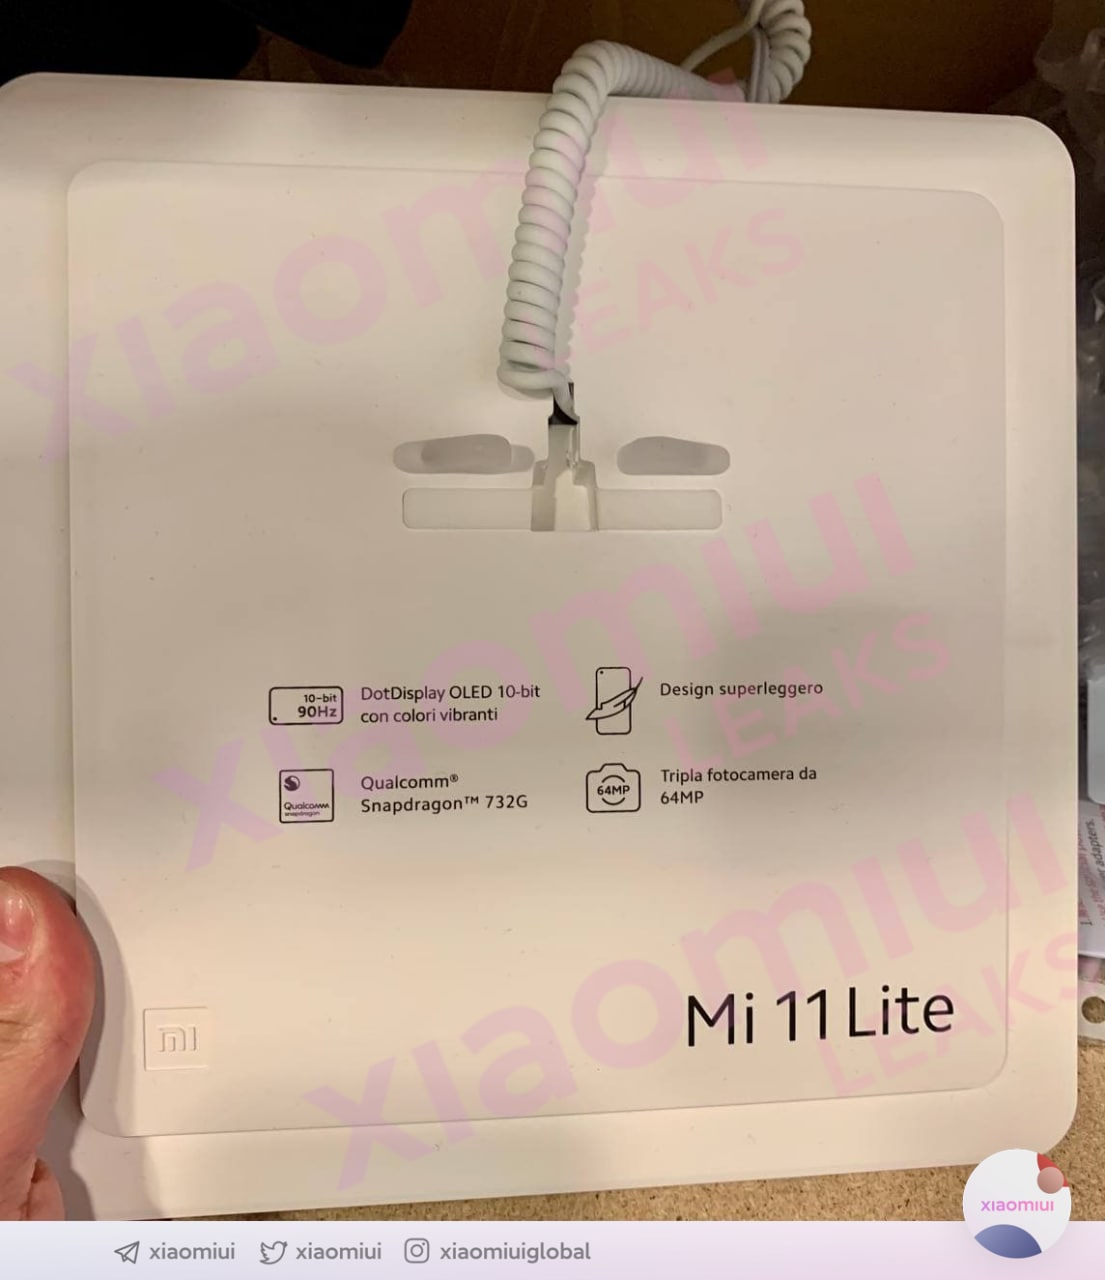 Xiaomi Mi 111 Lite 4G key details